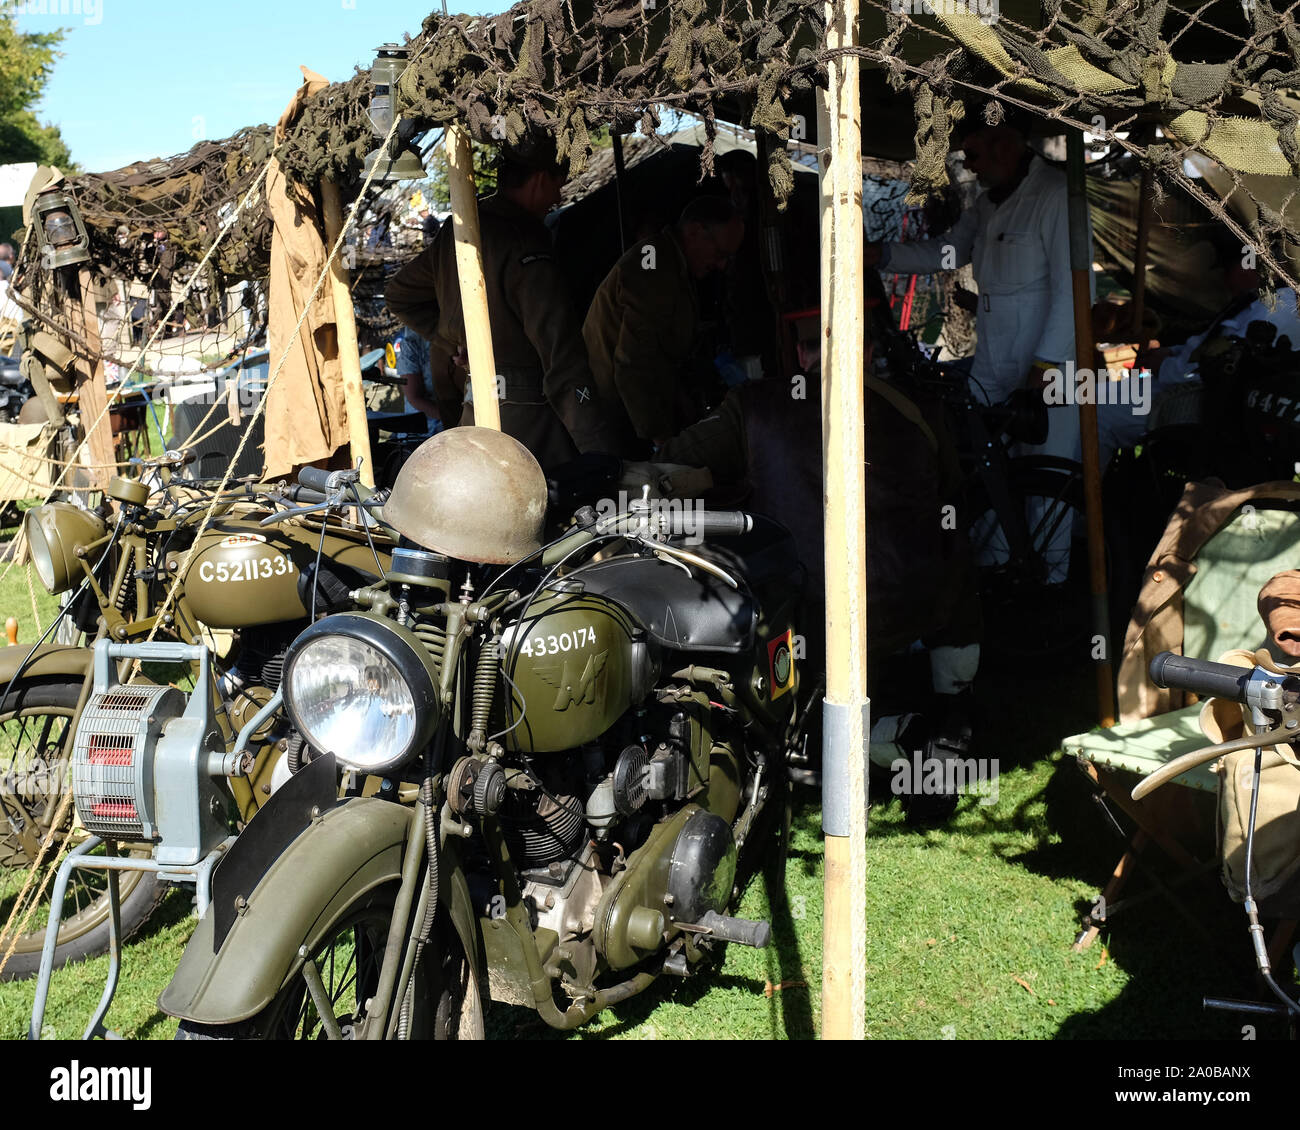 September 2019 - Militär stehen in Goodwood Revival mit Fahrrädern Stockfoto